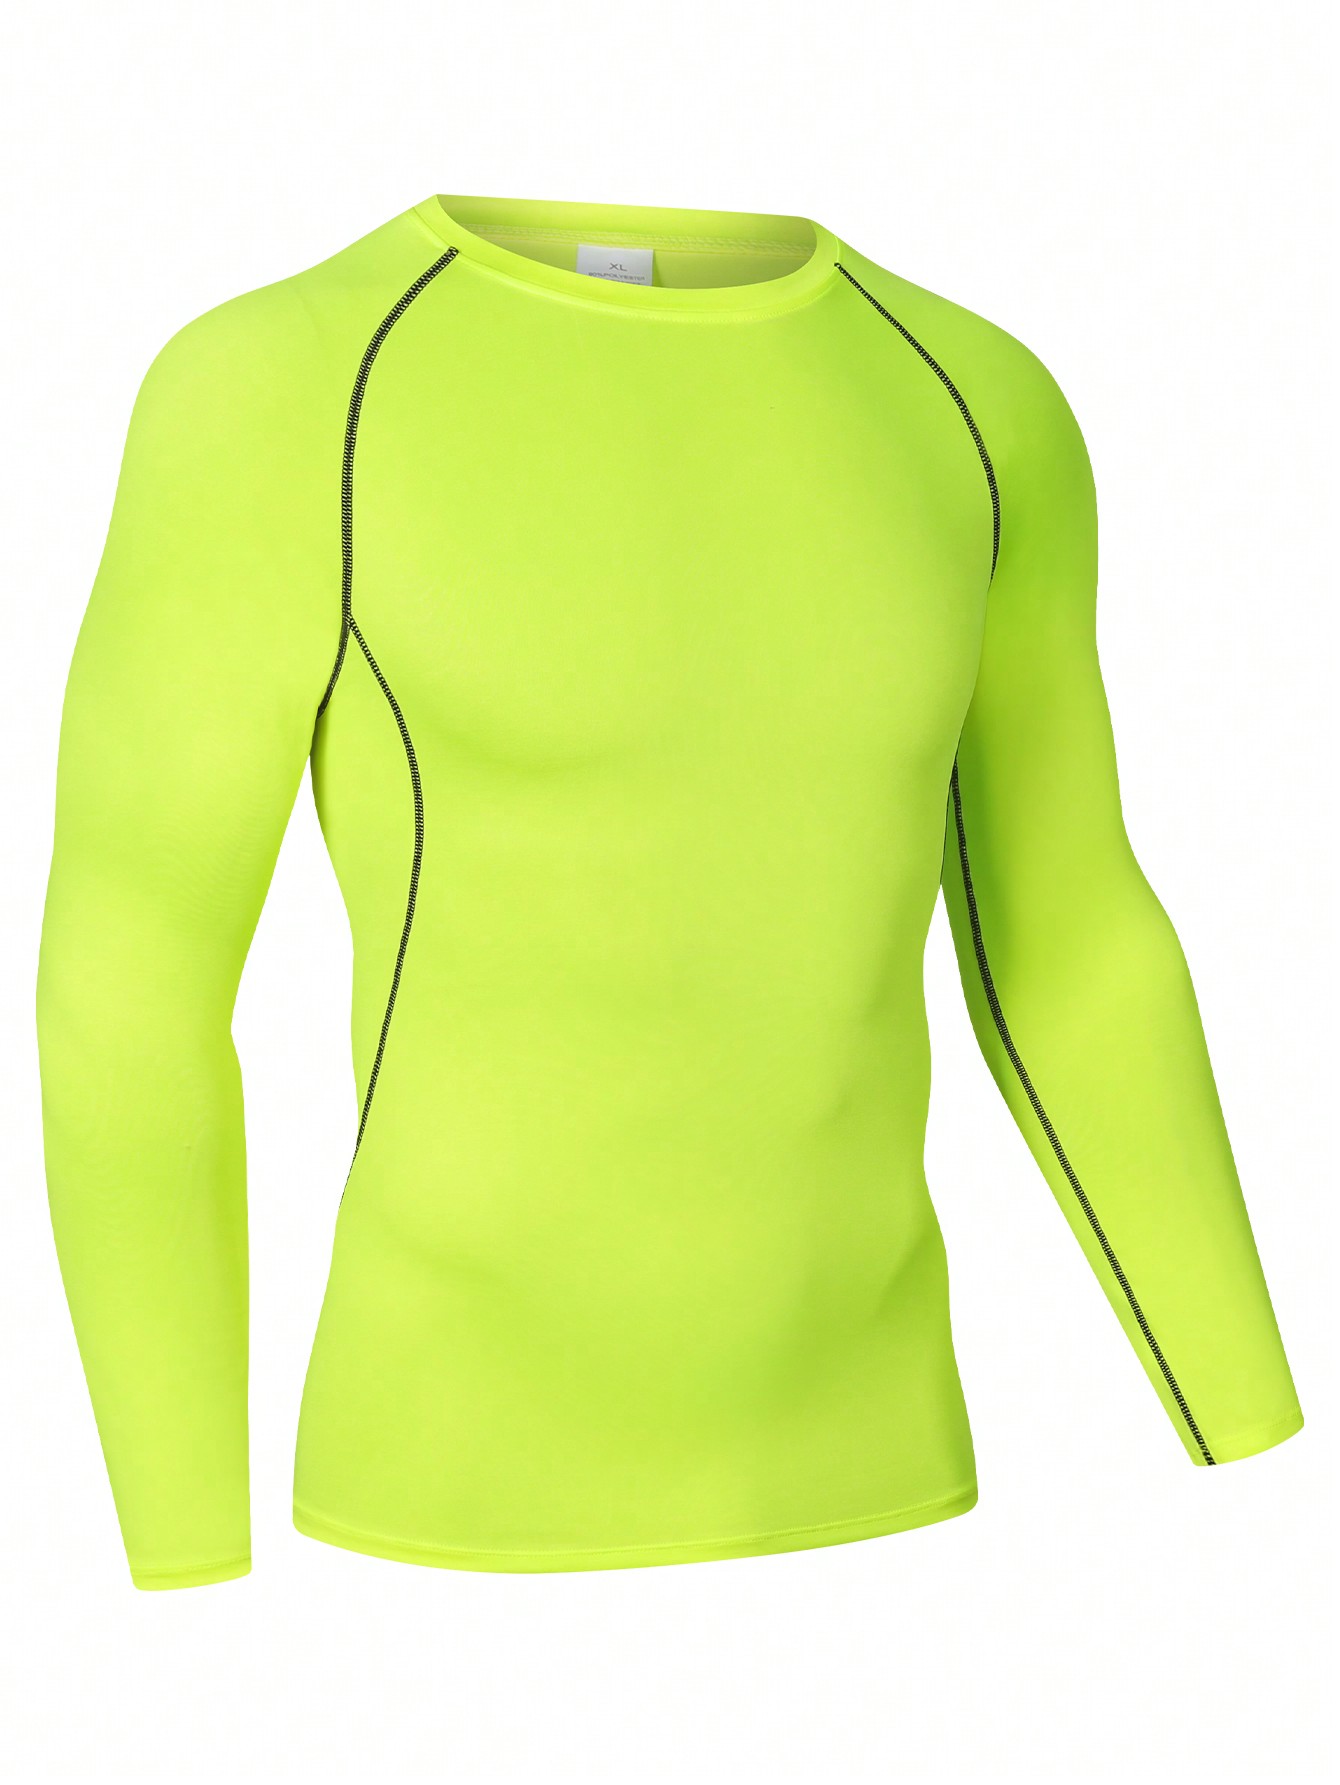 Мужская эластичная компрессионная рубашка для фитнеса с длинными рукавами, зеленый новинка 2021 походные и рыболовные рубашки gamakatsu спортивная быстросохнущая мужская одежда для рыбалки одежда для велоспорта и рыбалки